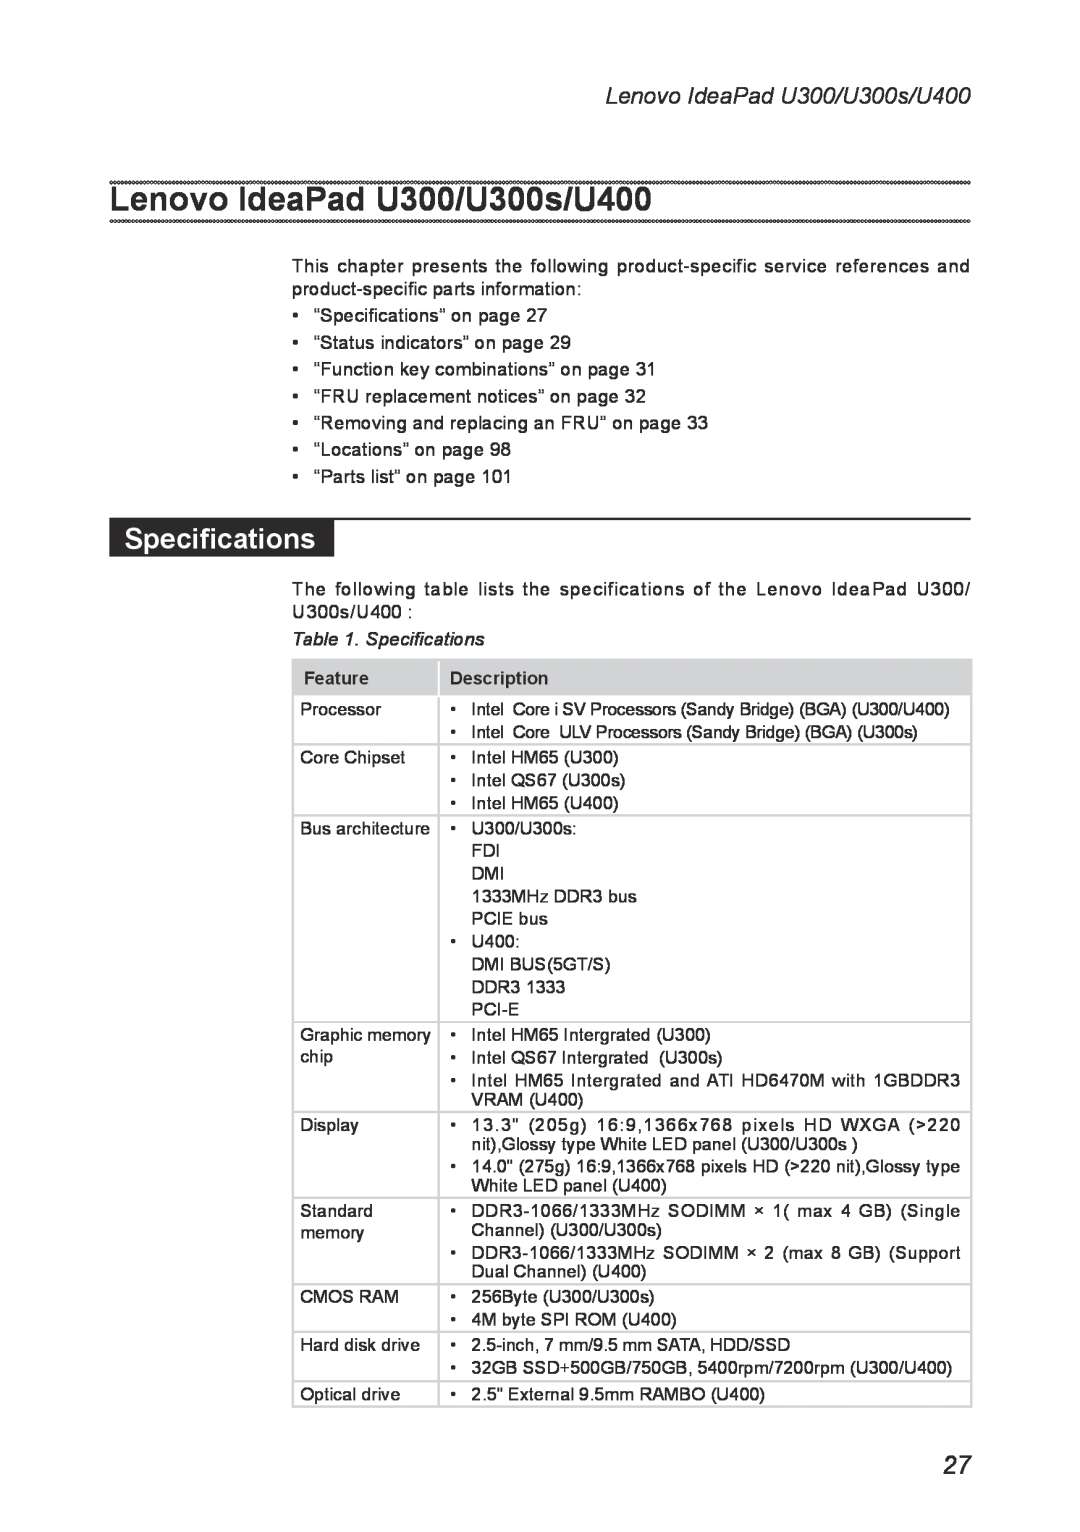 Lenovo U300S manual Lenovo IdeaPad U300/U300s/U400, Specifications, Feature, Description 